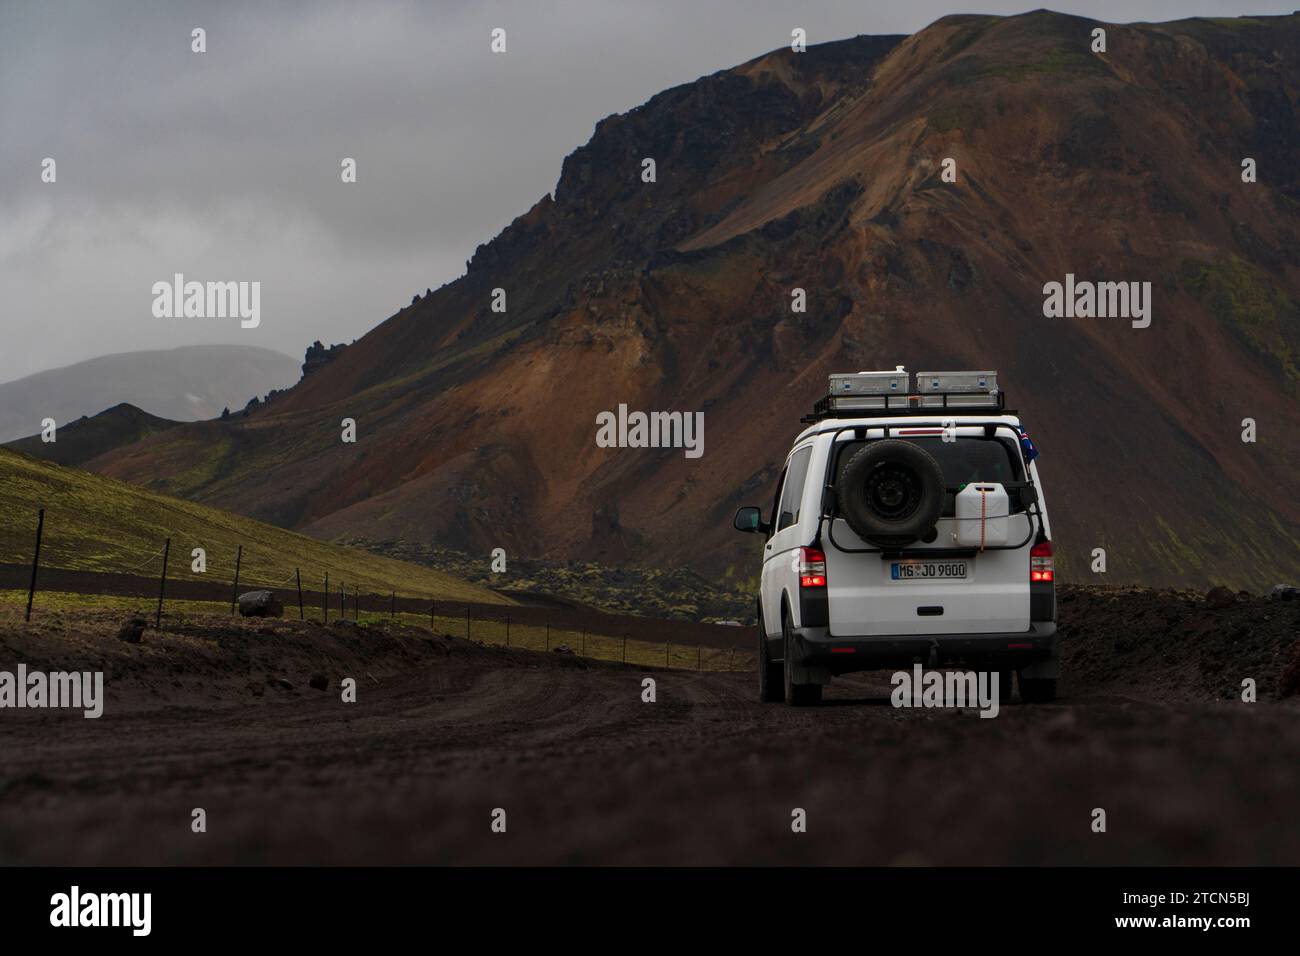 Ein 4x4, offroad VW bus auf der F208 inmitten einer urzeitlichen Vulkanlandschaft in der Nähe von Landmannalaugar, Islande Banque D'Images